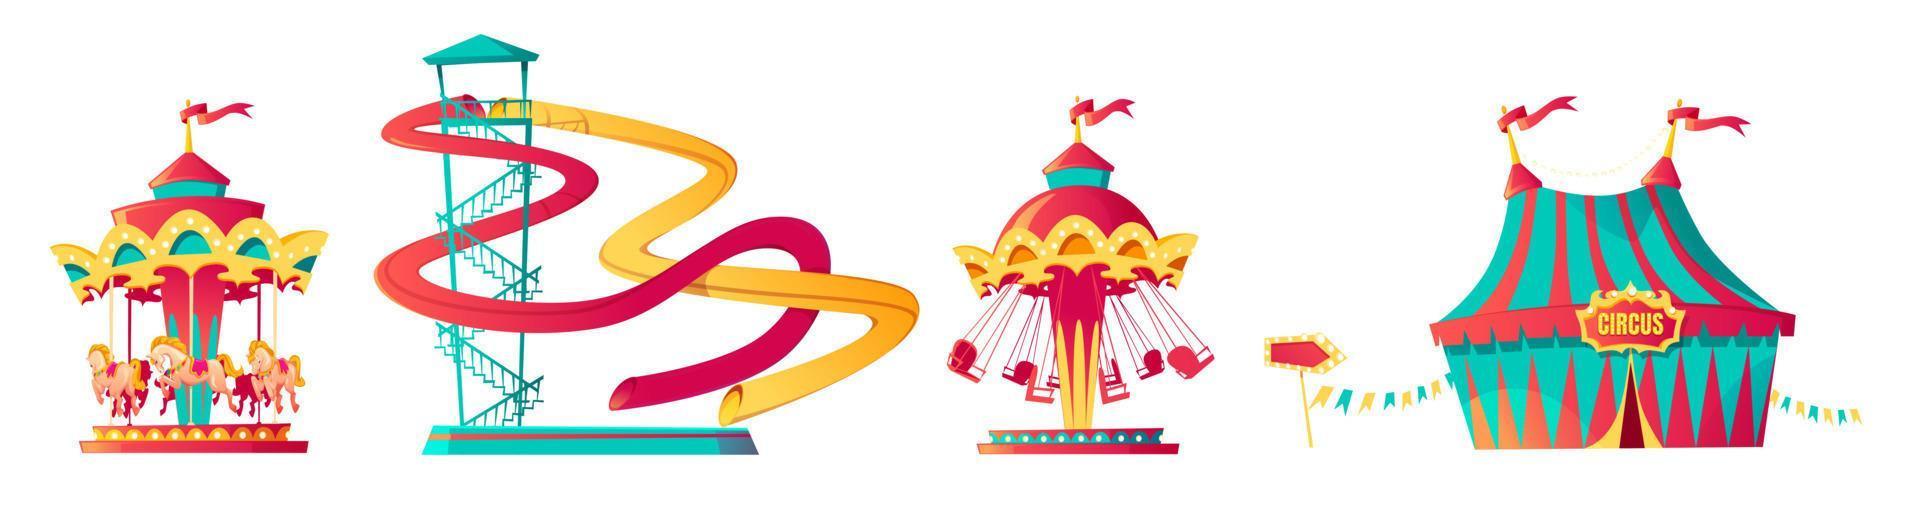 Amusement park, carnival or festive fair cartoon vector